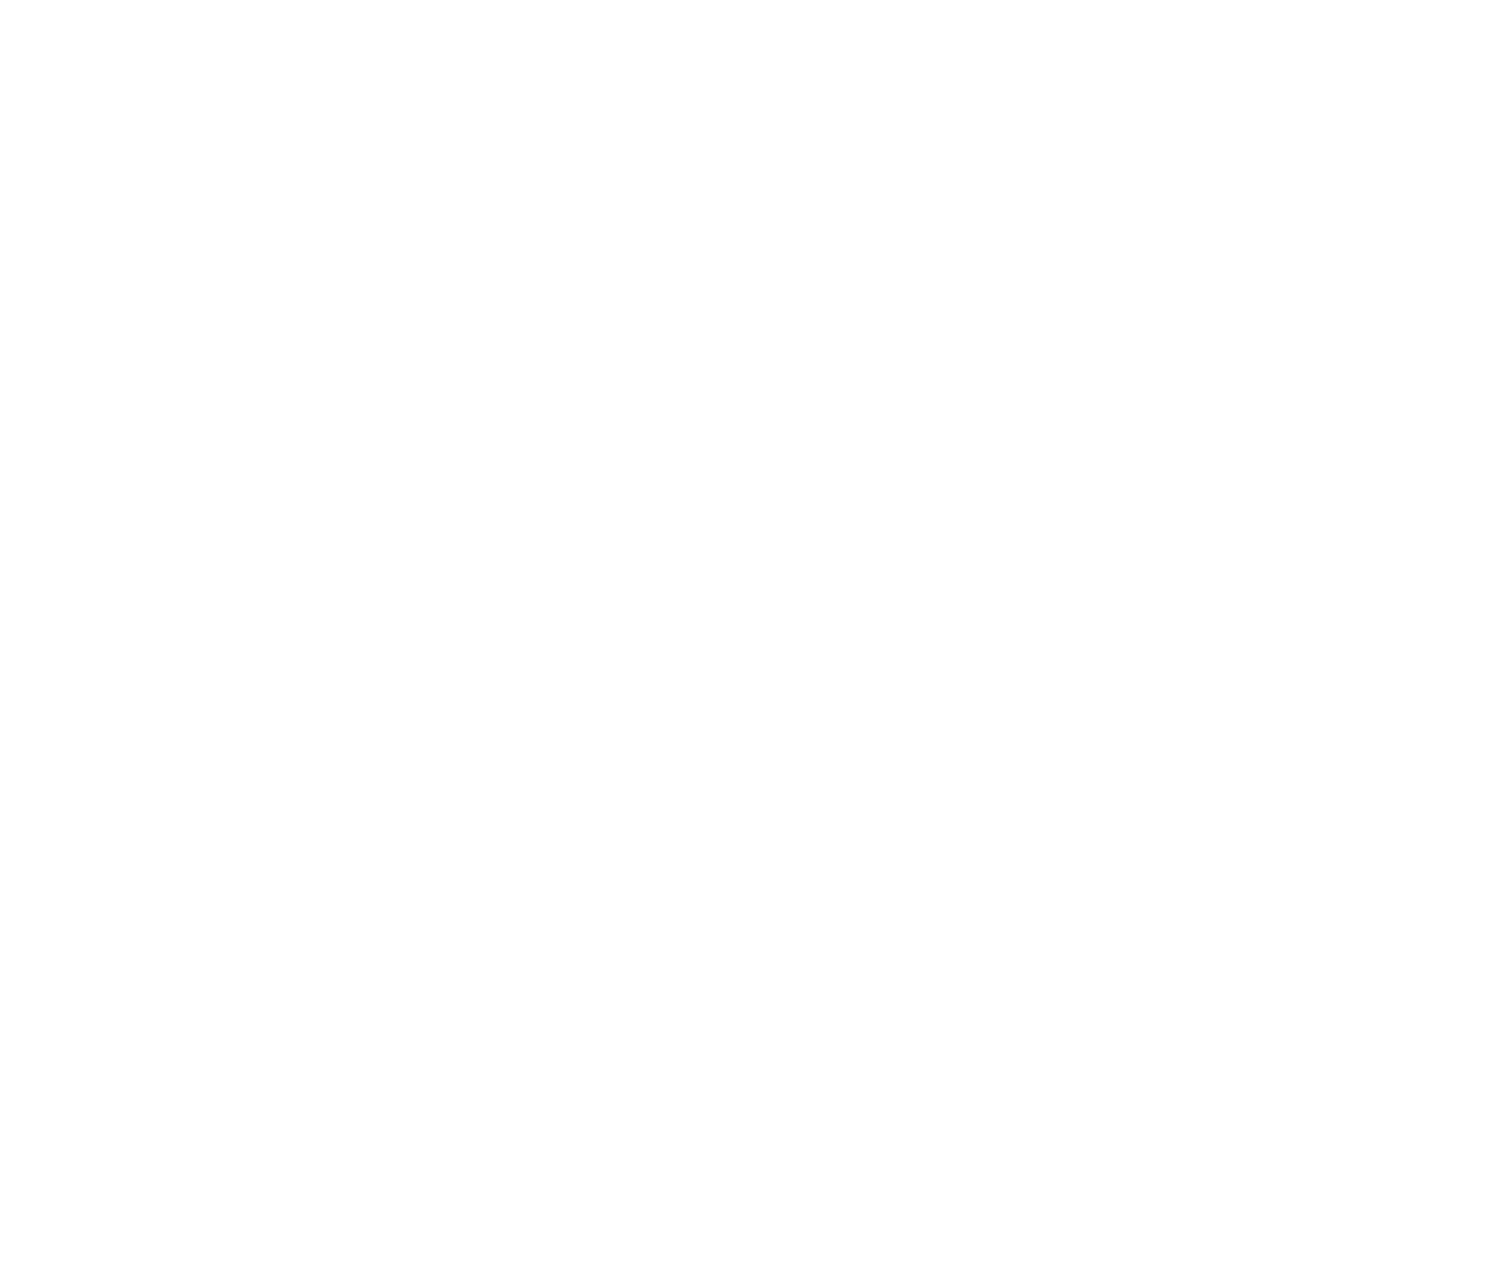 WRWC NNWPC